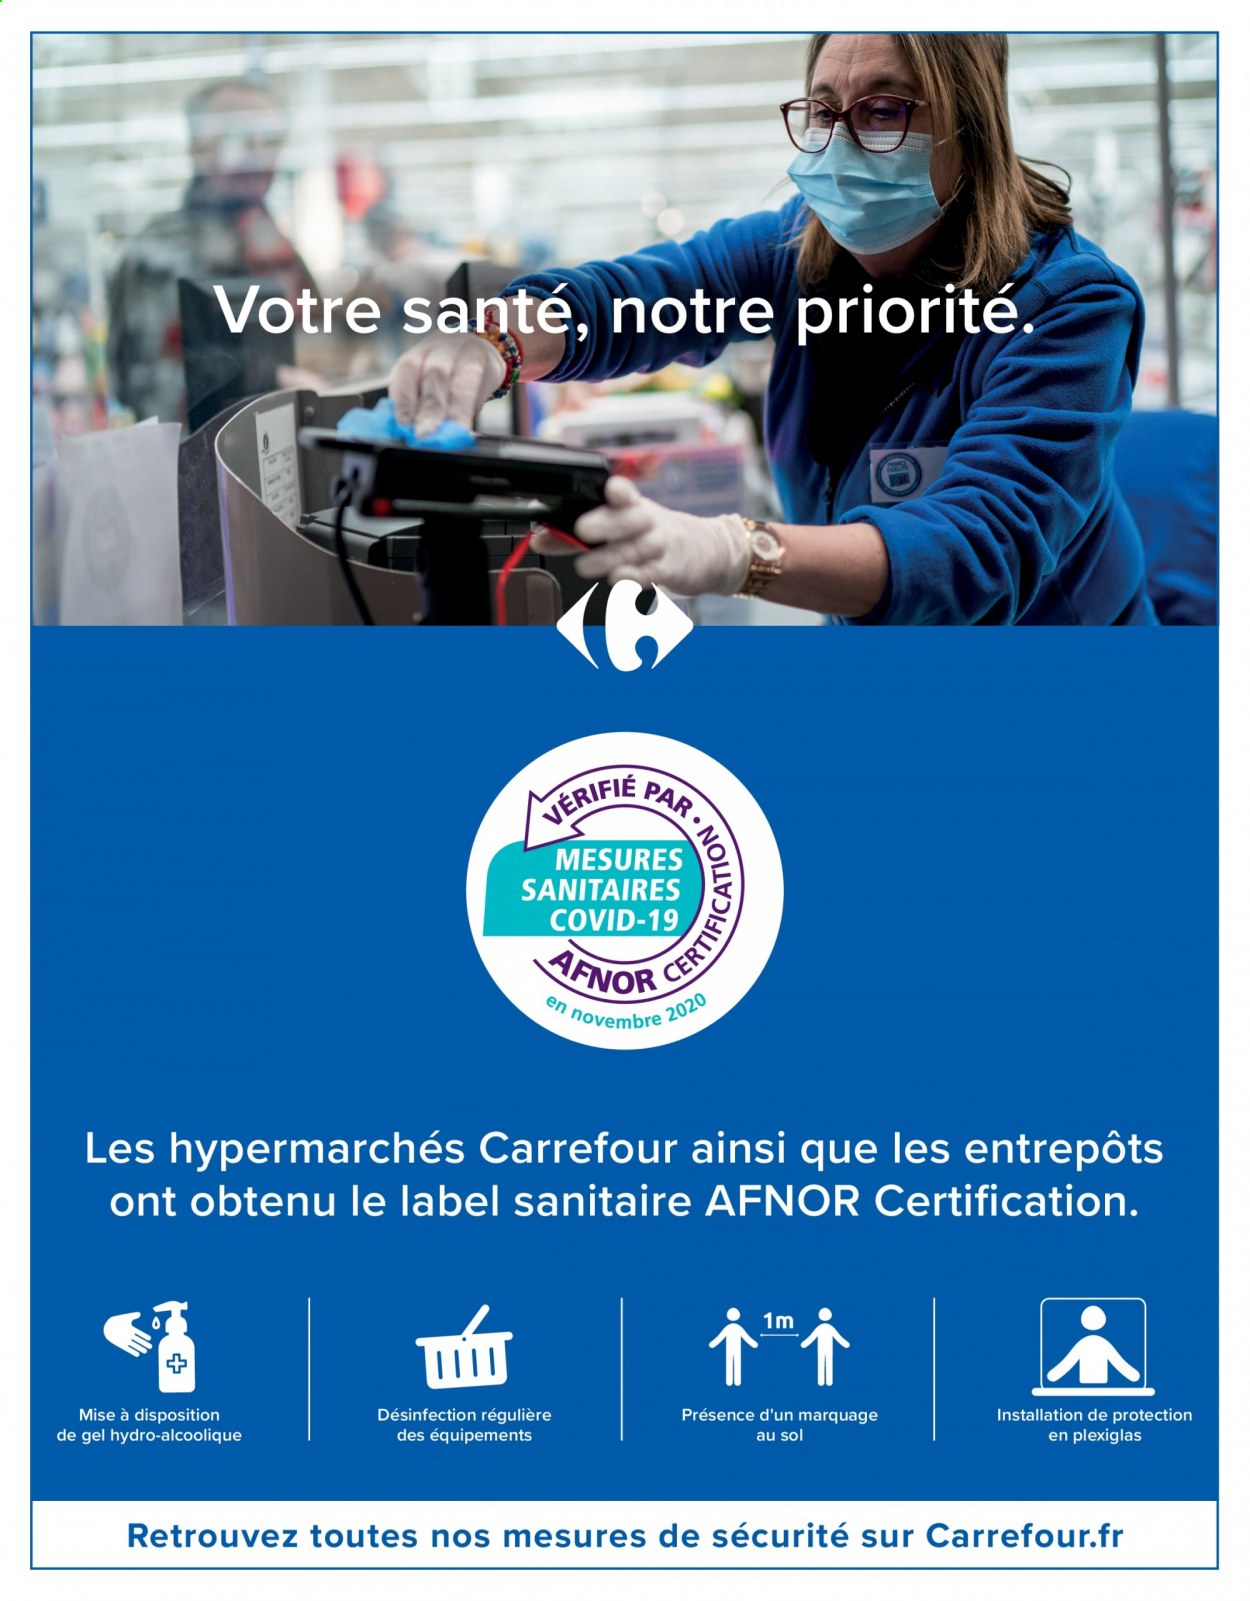 Catalogue Carrefour Hypermarchés - 30.03.2021 - 19.04.2021. 